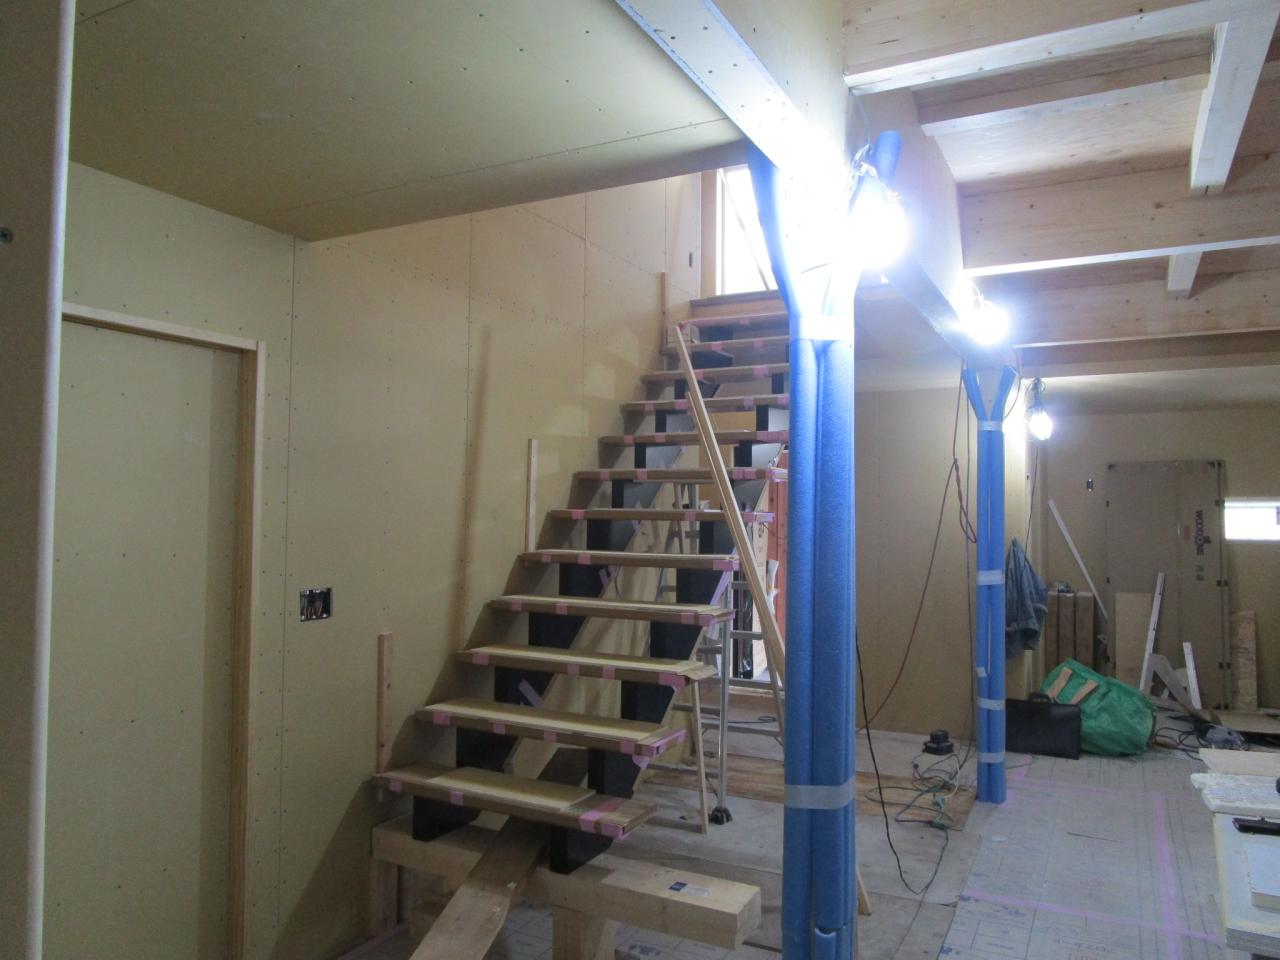 2023.09.02　1階内部：オープン（デザイン）階段も取付きました。これから造作物本番です。